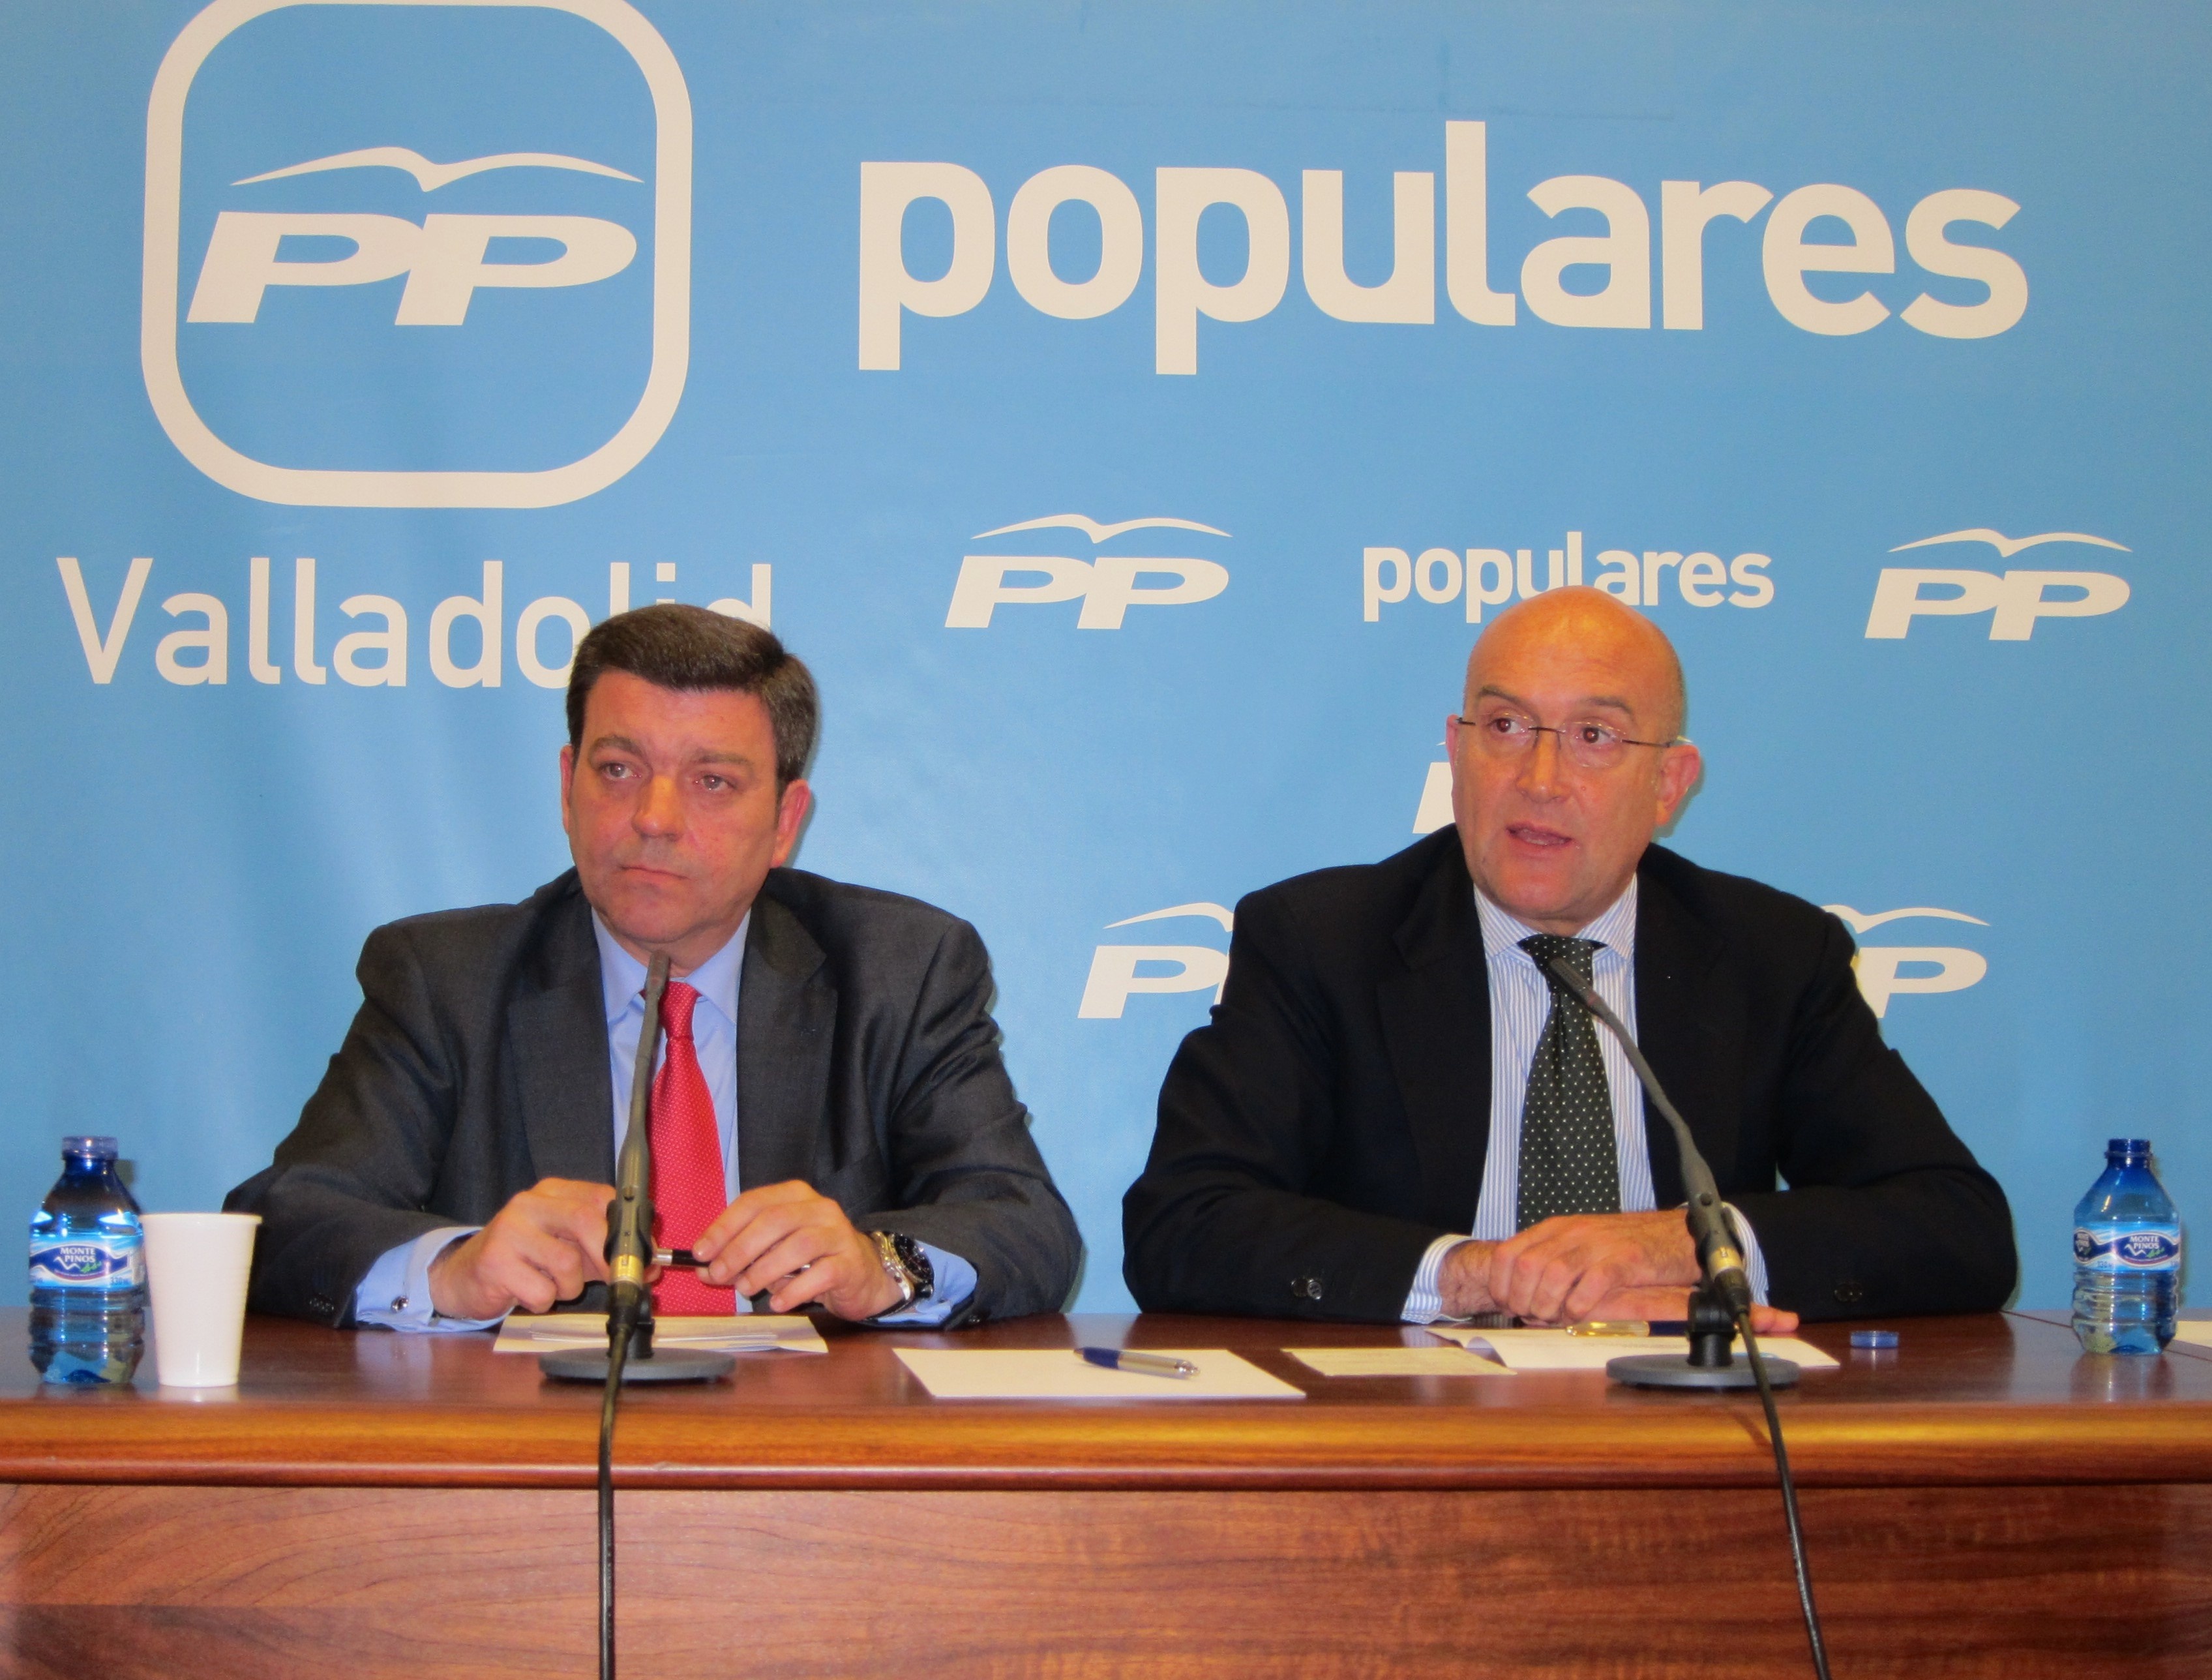 El PP de Valladolid celebra este sábado su Convención, »Municipios para las Personas», que abordará las reformas locales